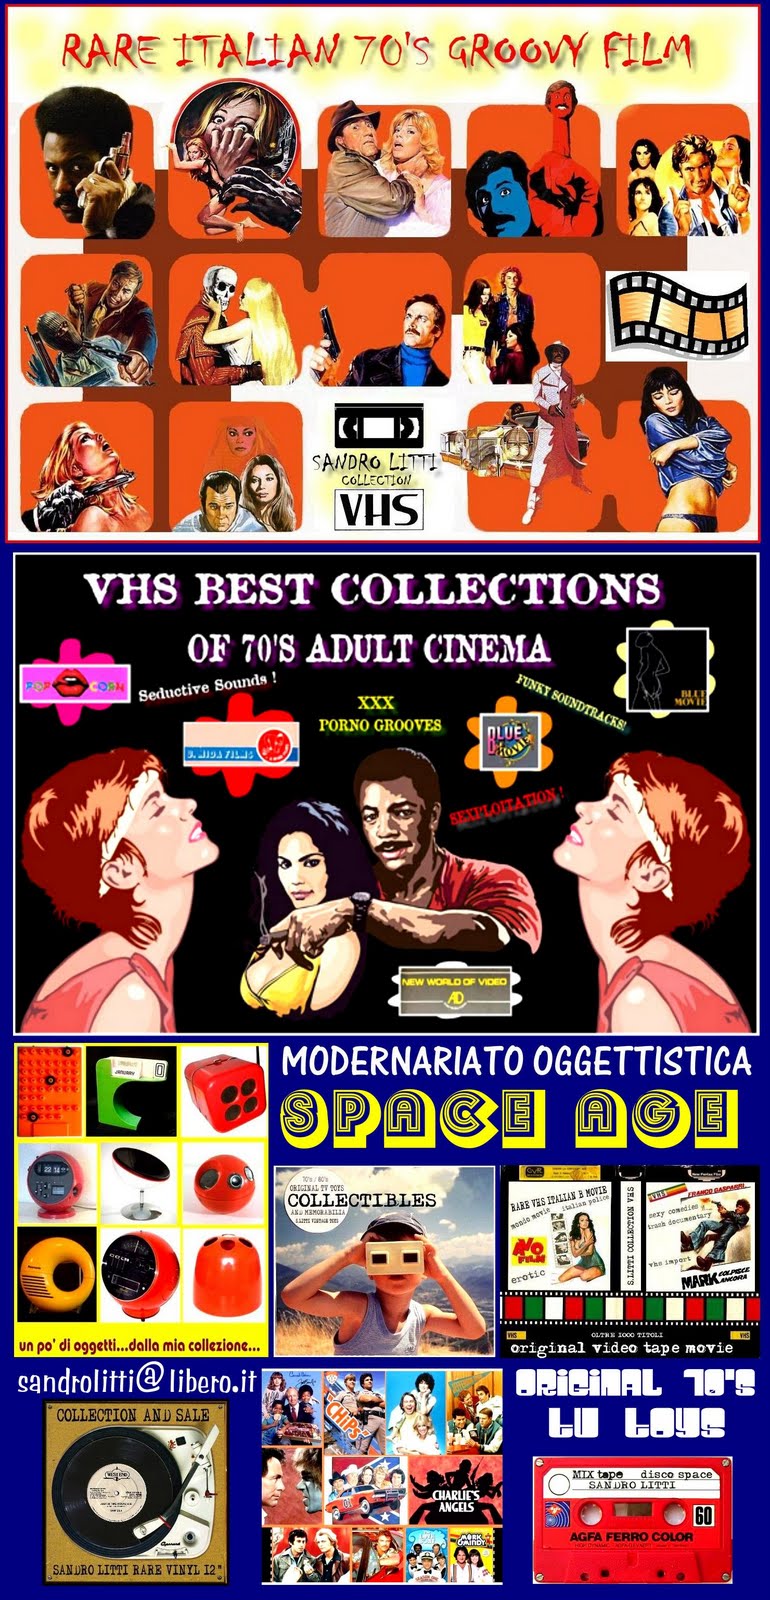 VENDITA DI VHS CULT RARE E DA COLLEZIONE